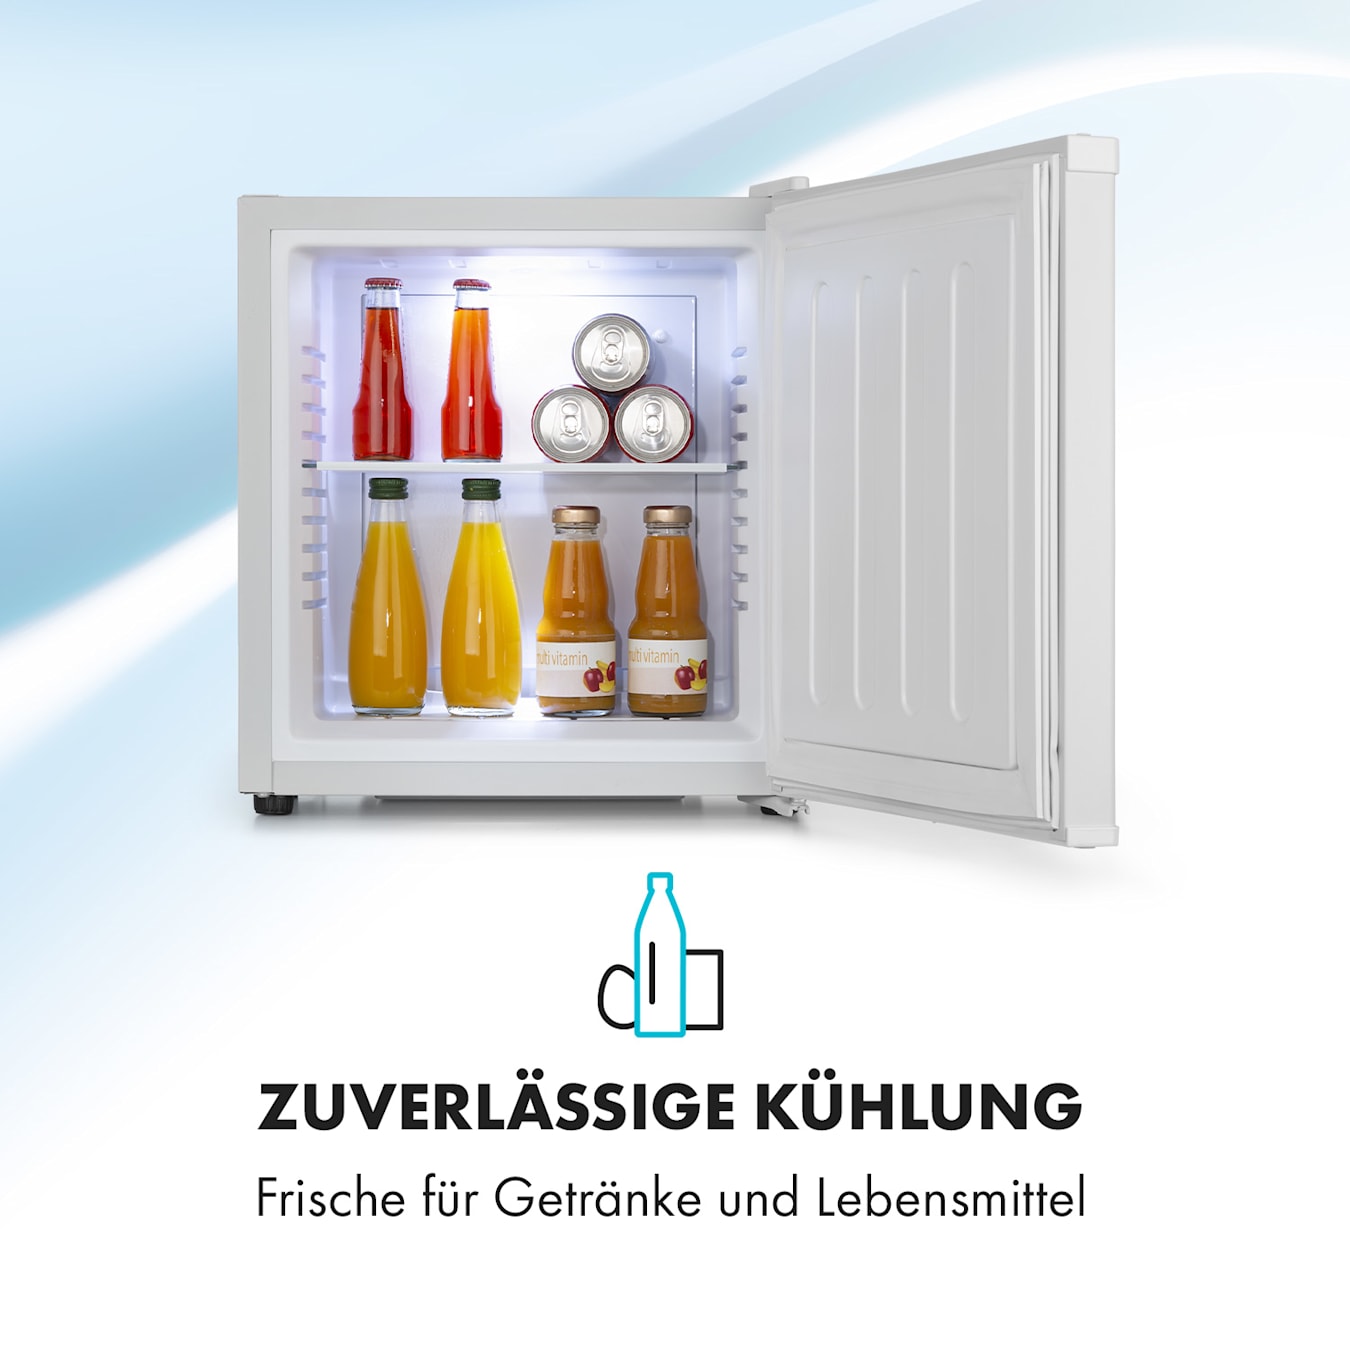 Amstyle Minikühlschrank 65 Liter Minibar Weiß freistehender Mini